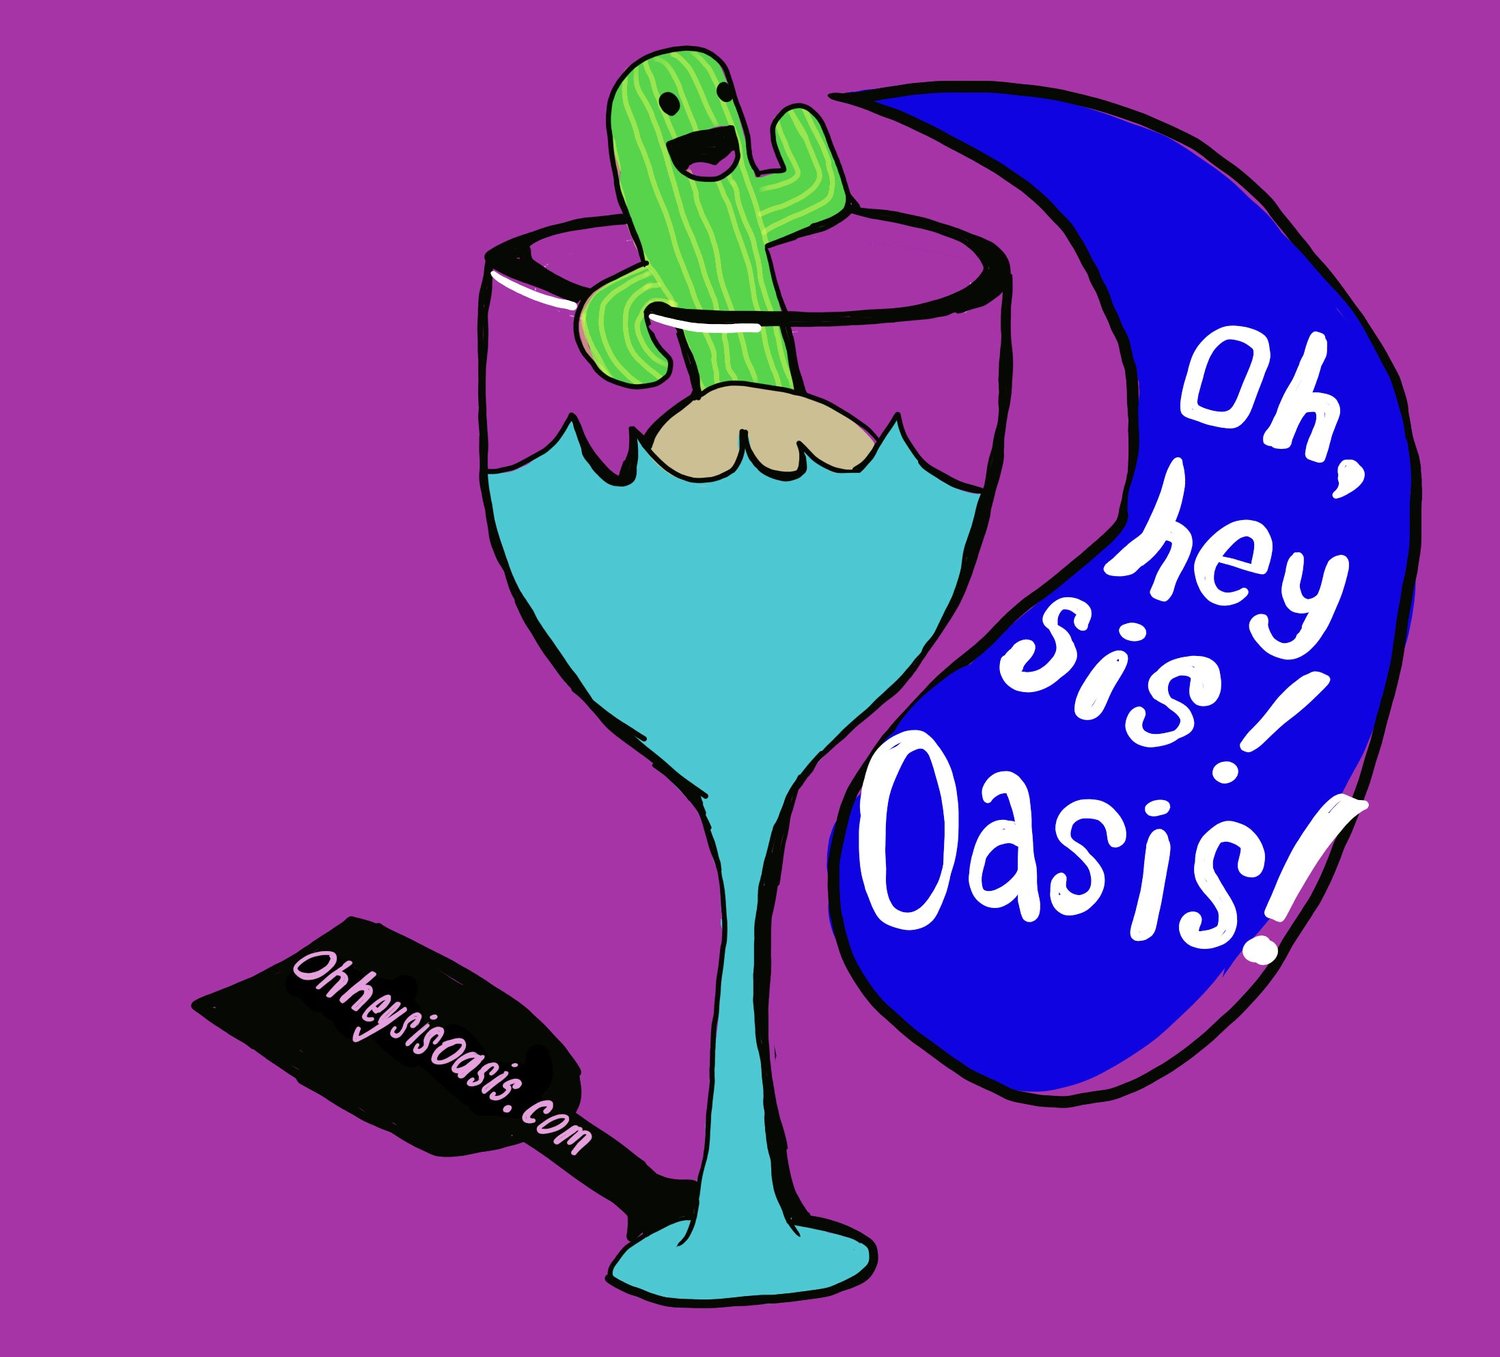 Oh Hey Sis, Oasis!